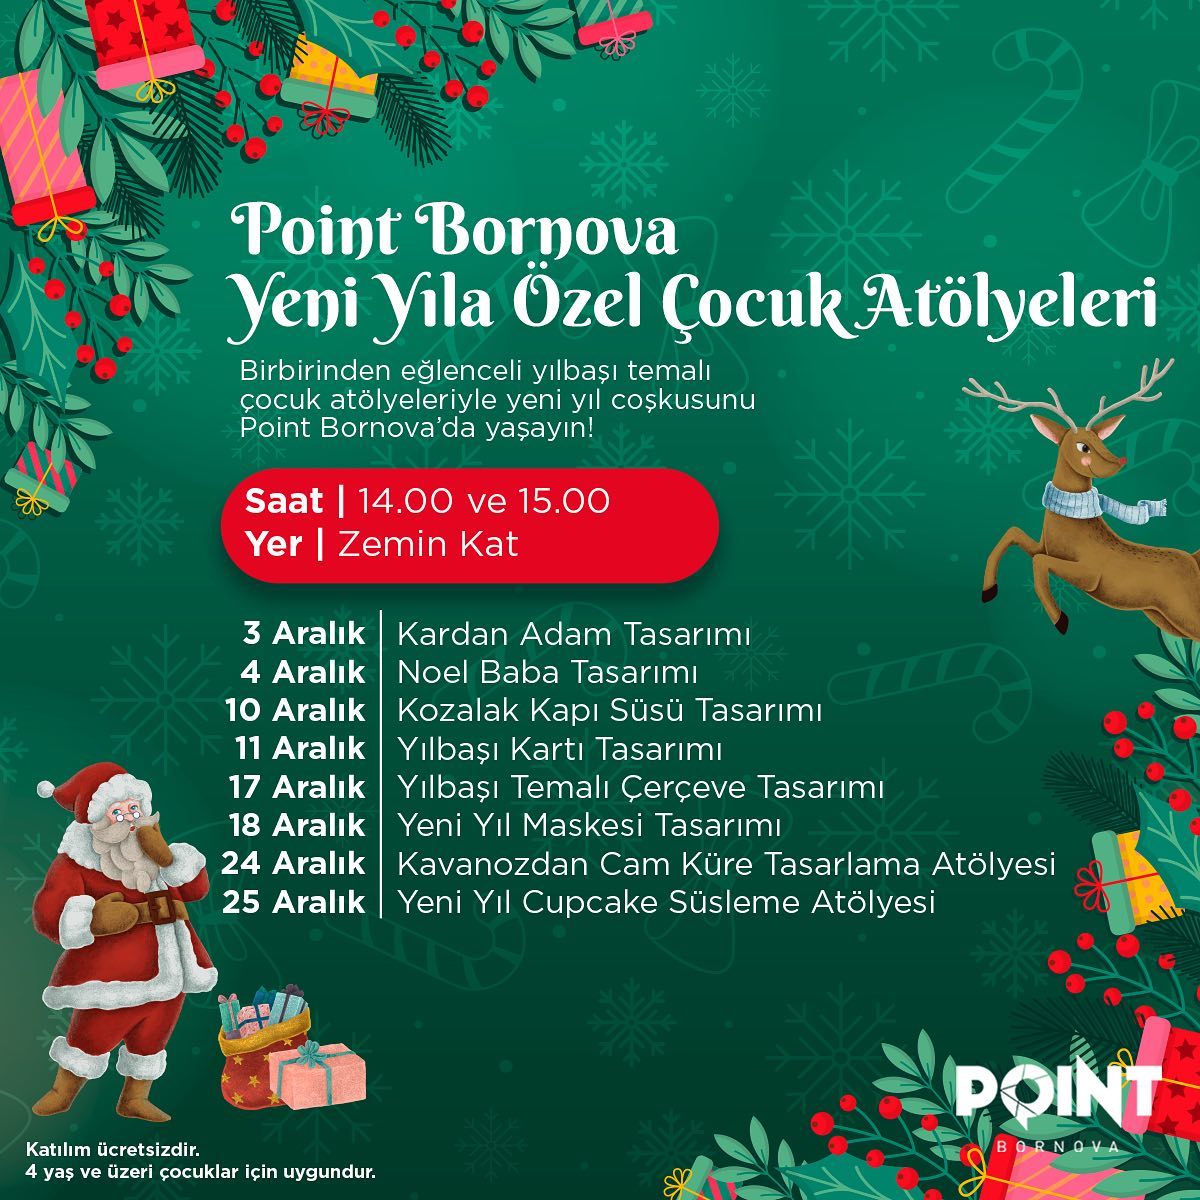 Point Bornova Yeni Yıla Özel Çocuk Atölyeleri